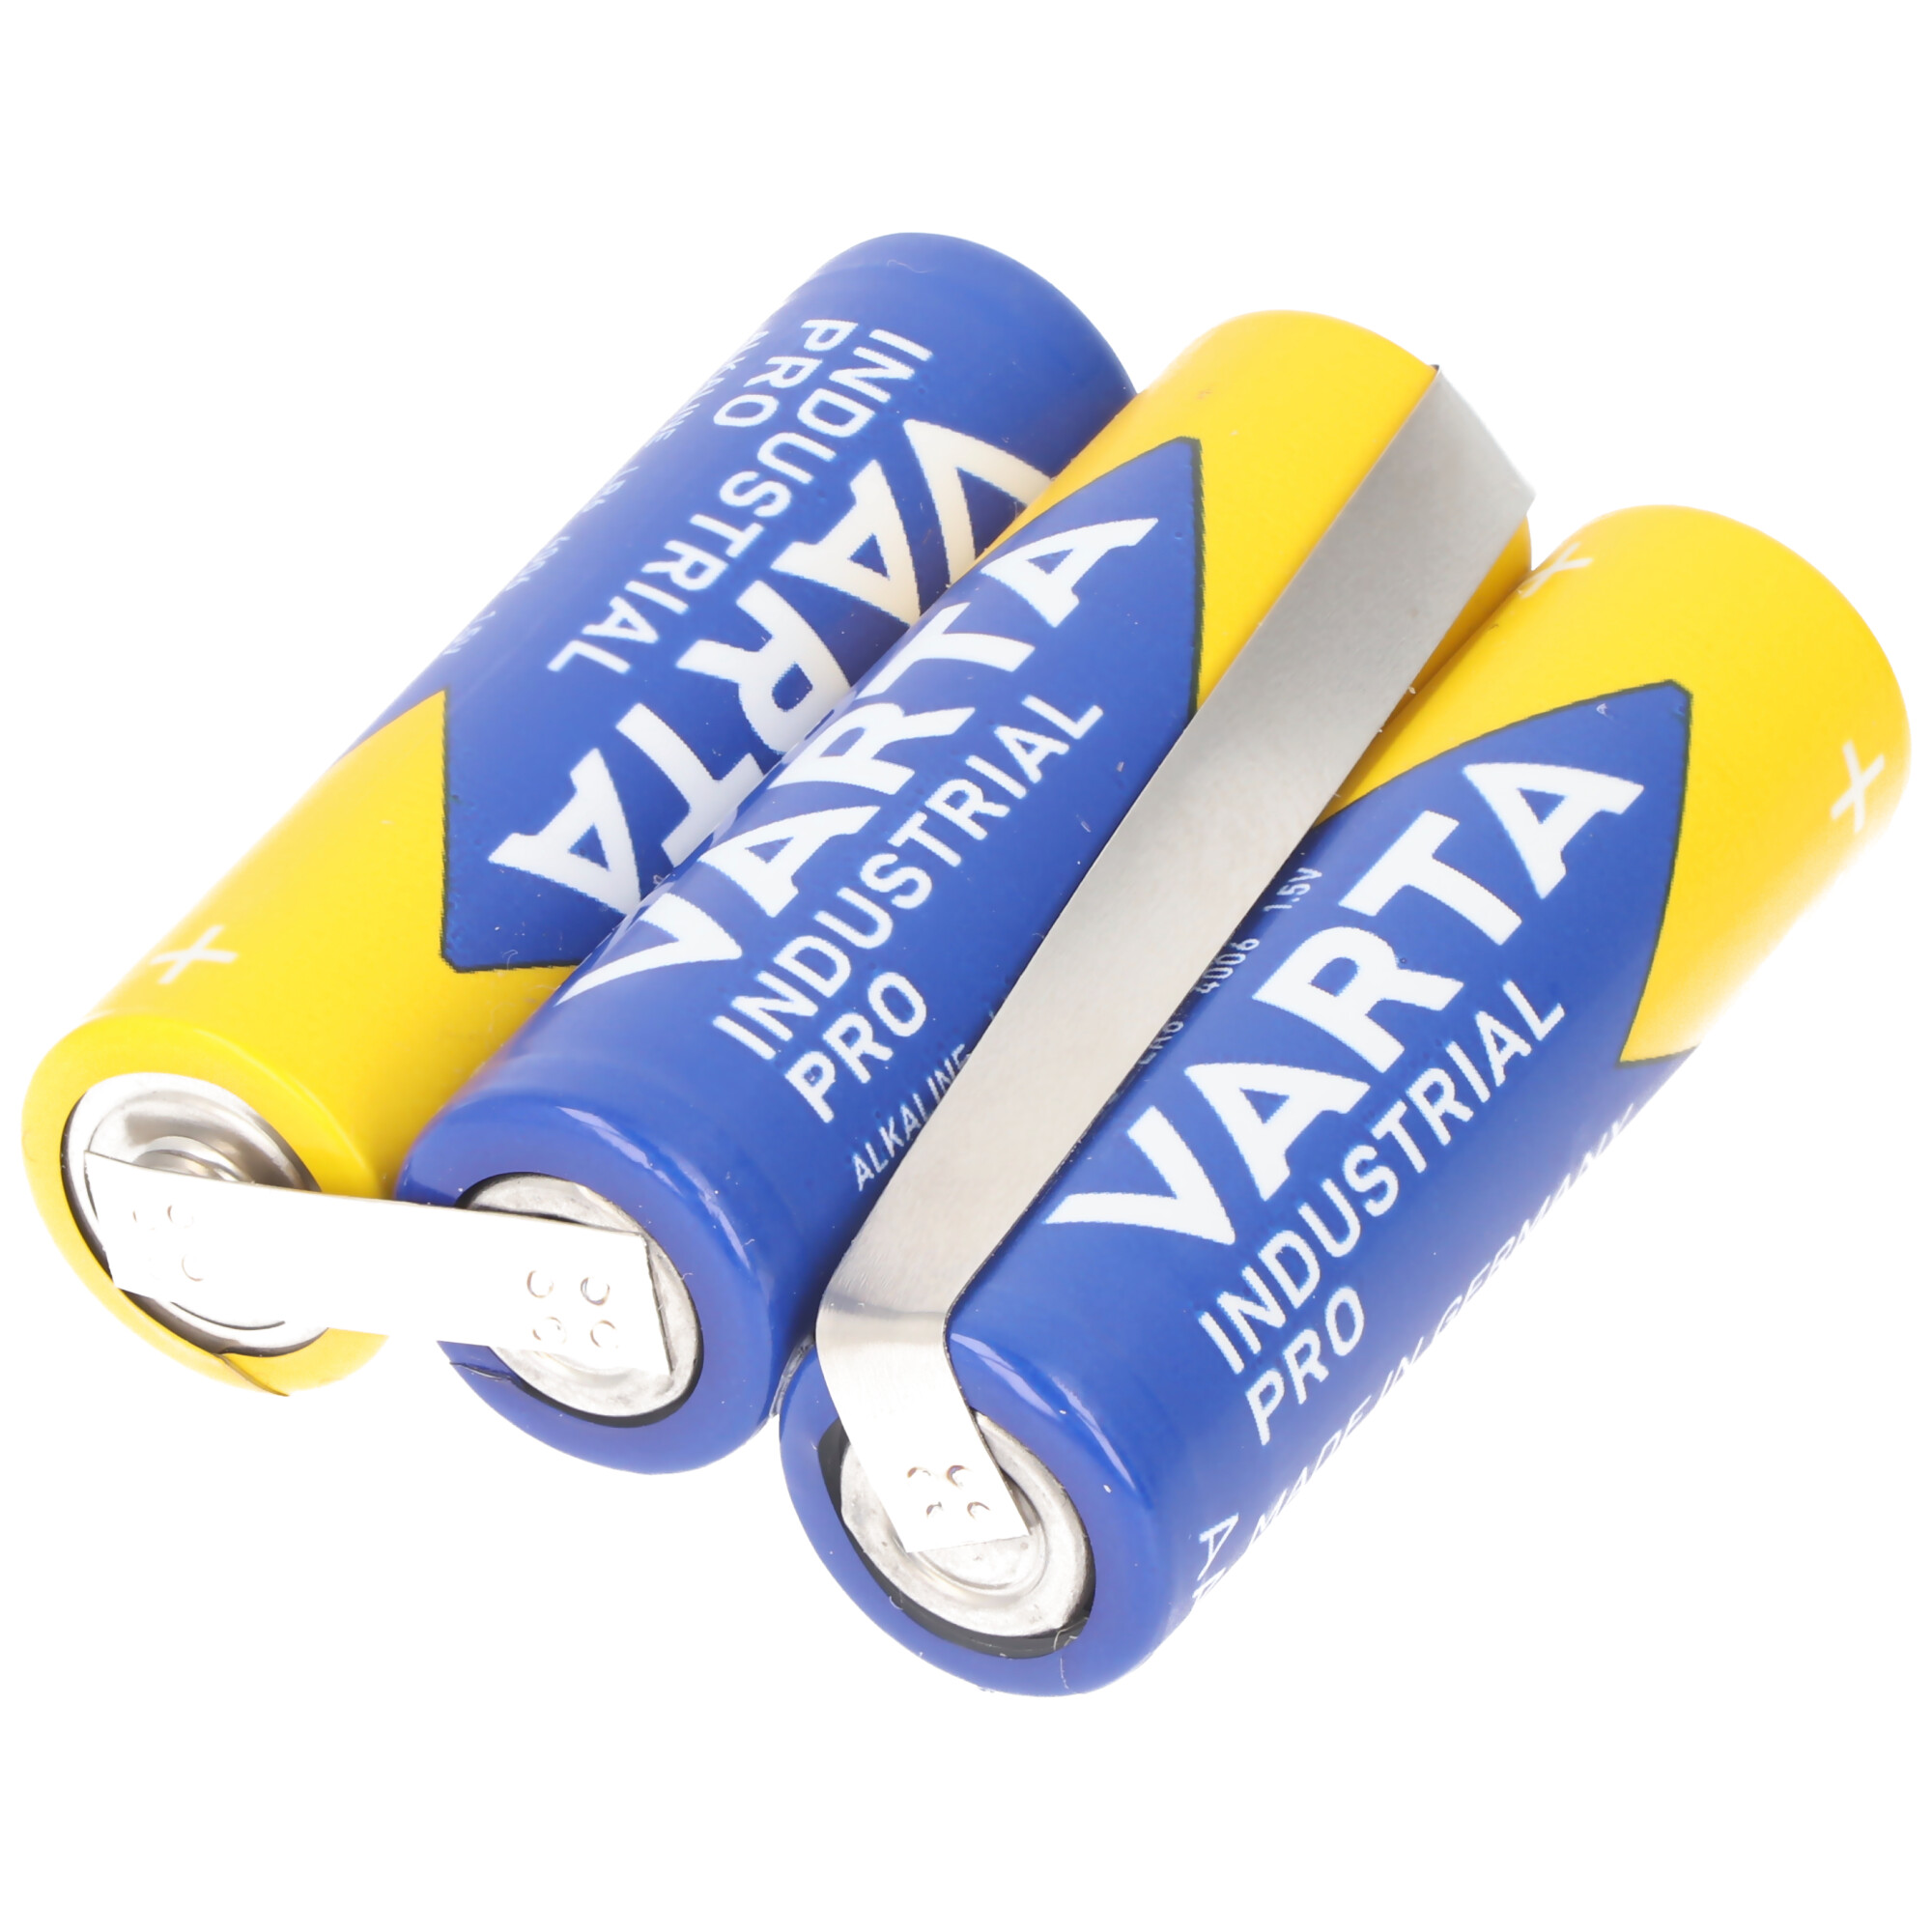 Varta Batteriepack F1x3 Bogen 4,5V 2600mAh 3er-Pack 4.5V, Abmessungen ca. 50,7 x 41,5 x 16,4mm